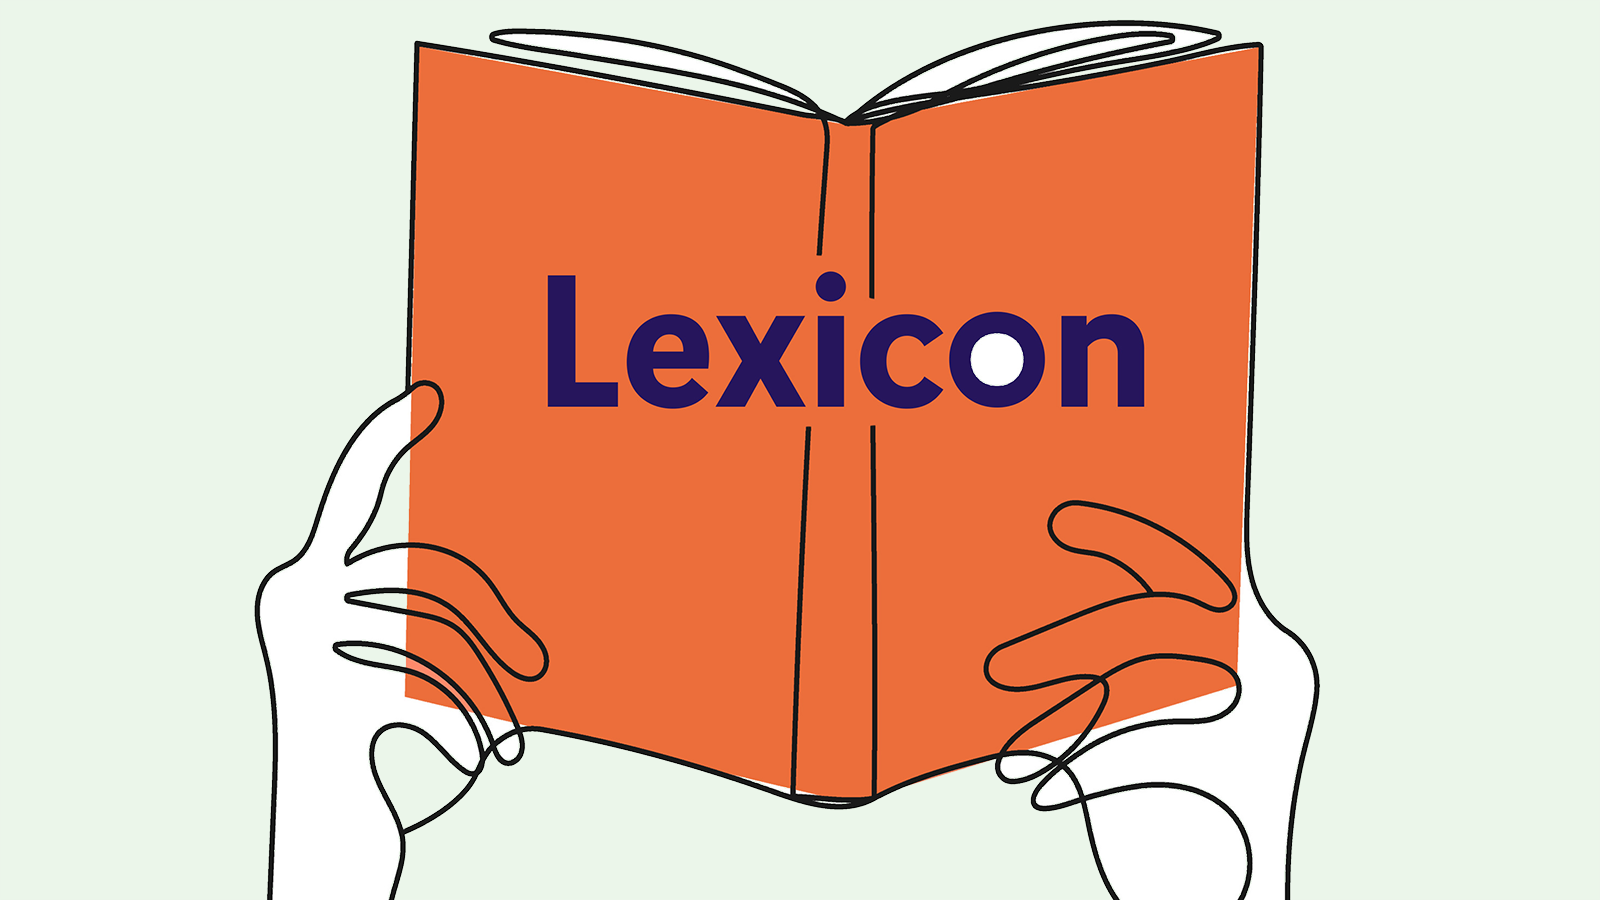 Illustratie handen met boek Lexicon